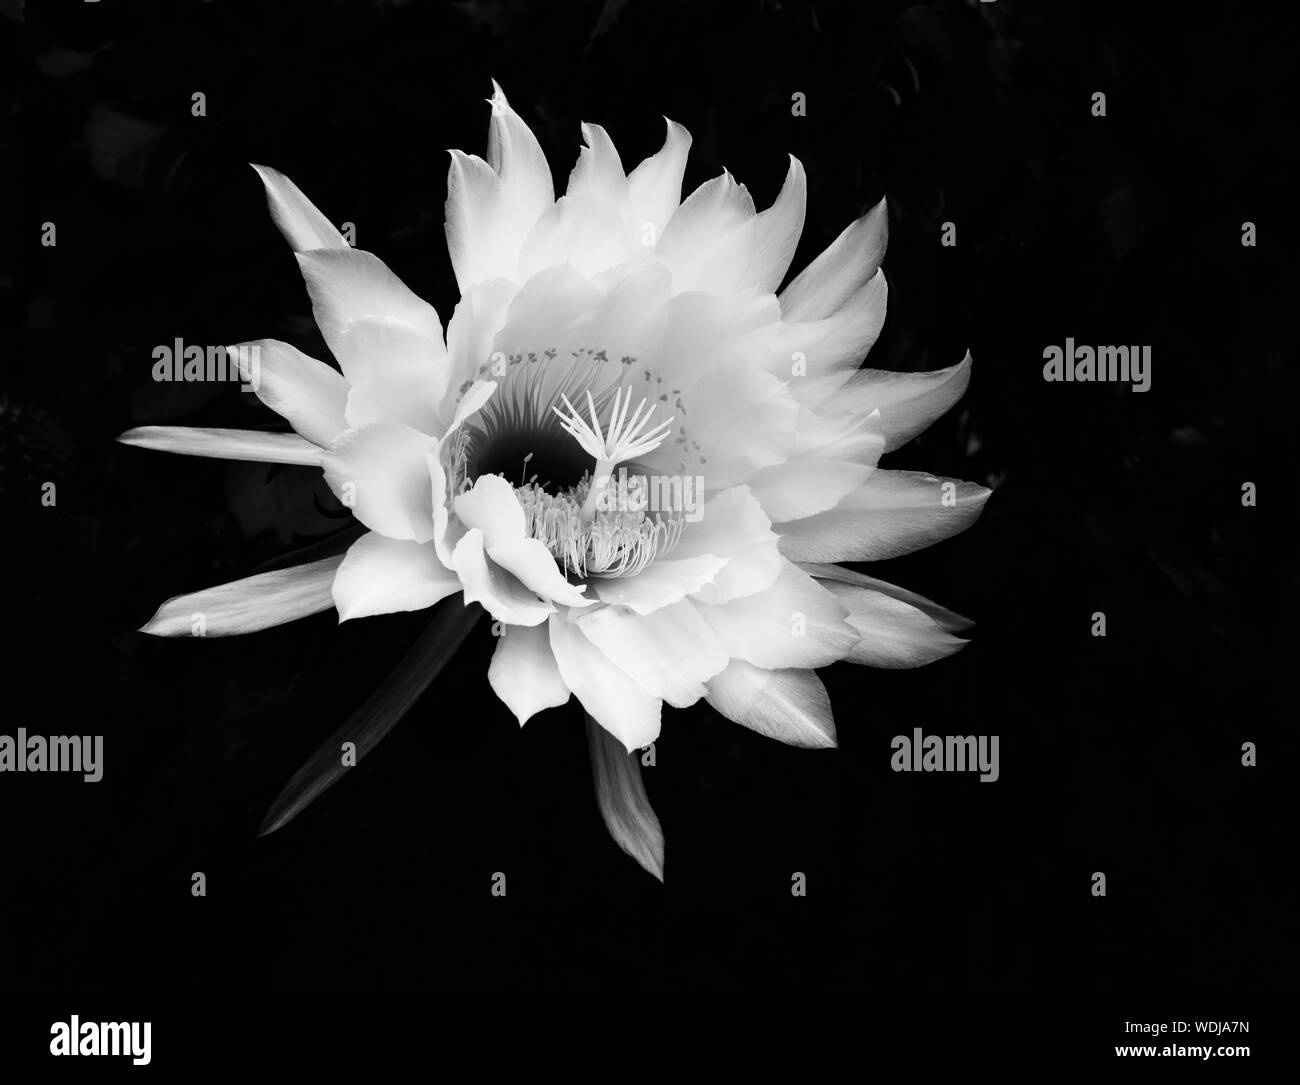 Increíble flor de noche blooming cereus cactus flower florece en imagen en blanco y negro. Foto de stock